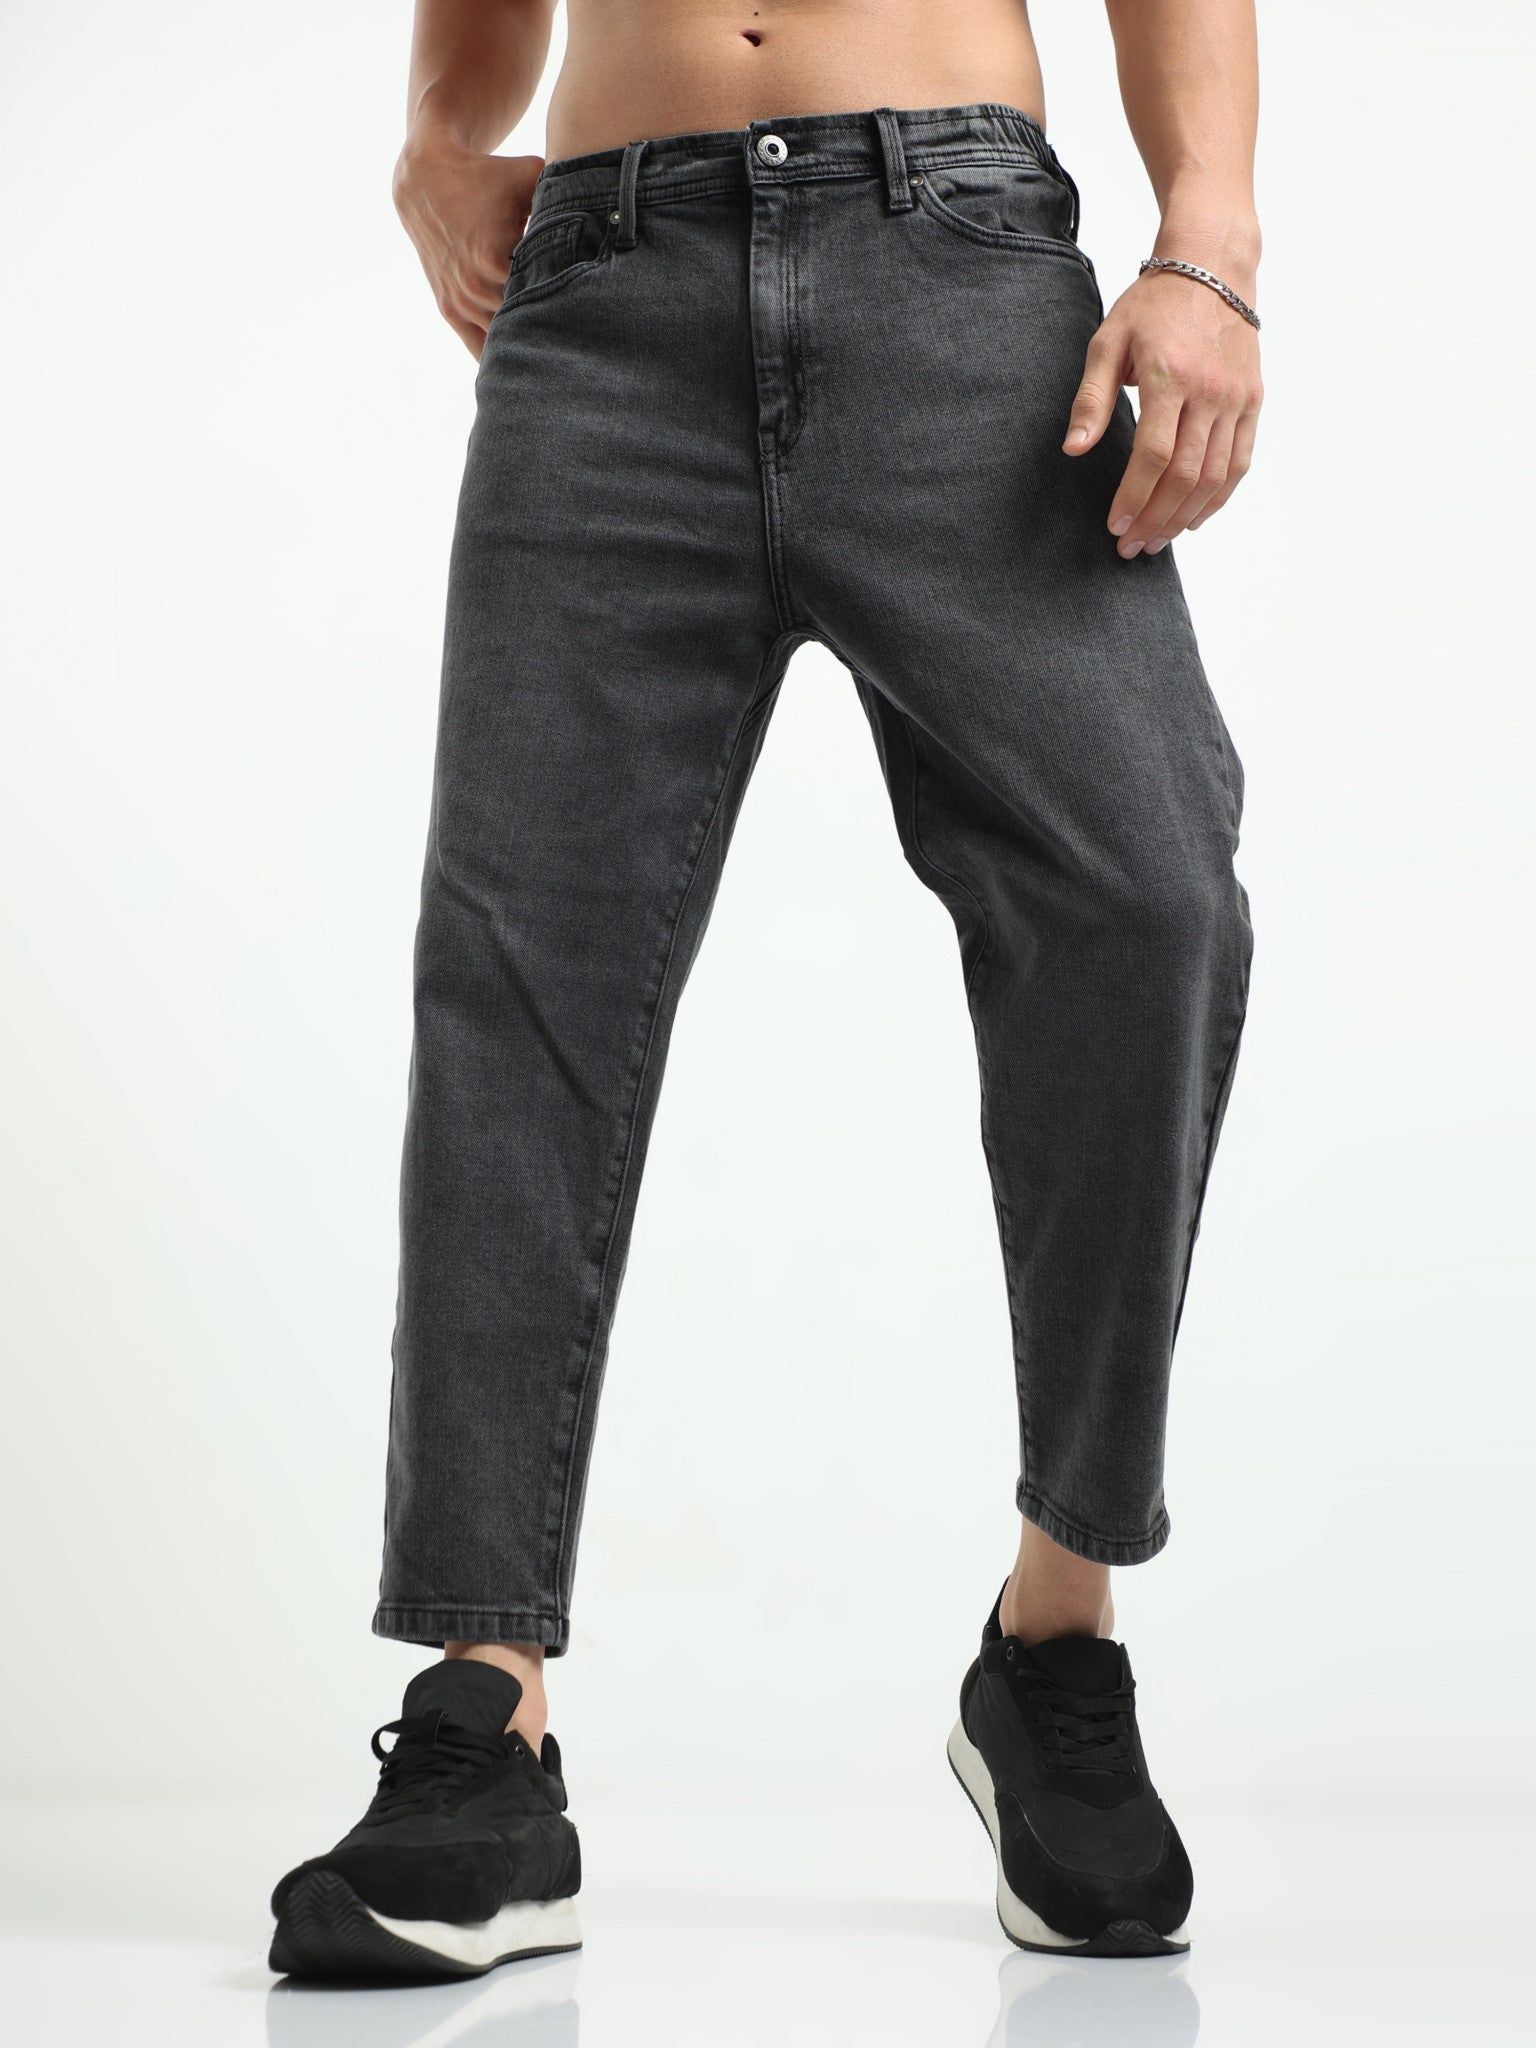 Carbon Black Slouchy Fit Jeans for Men 